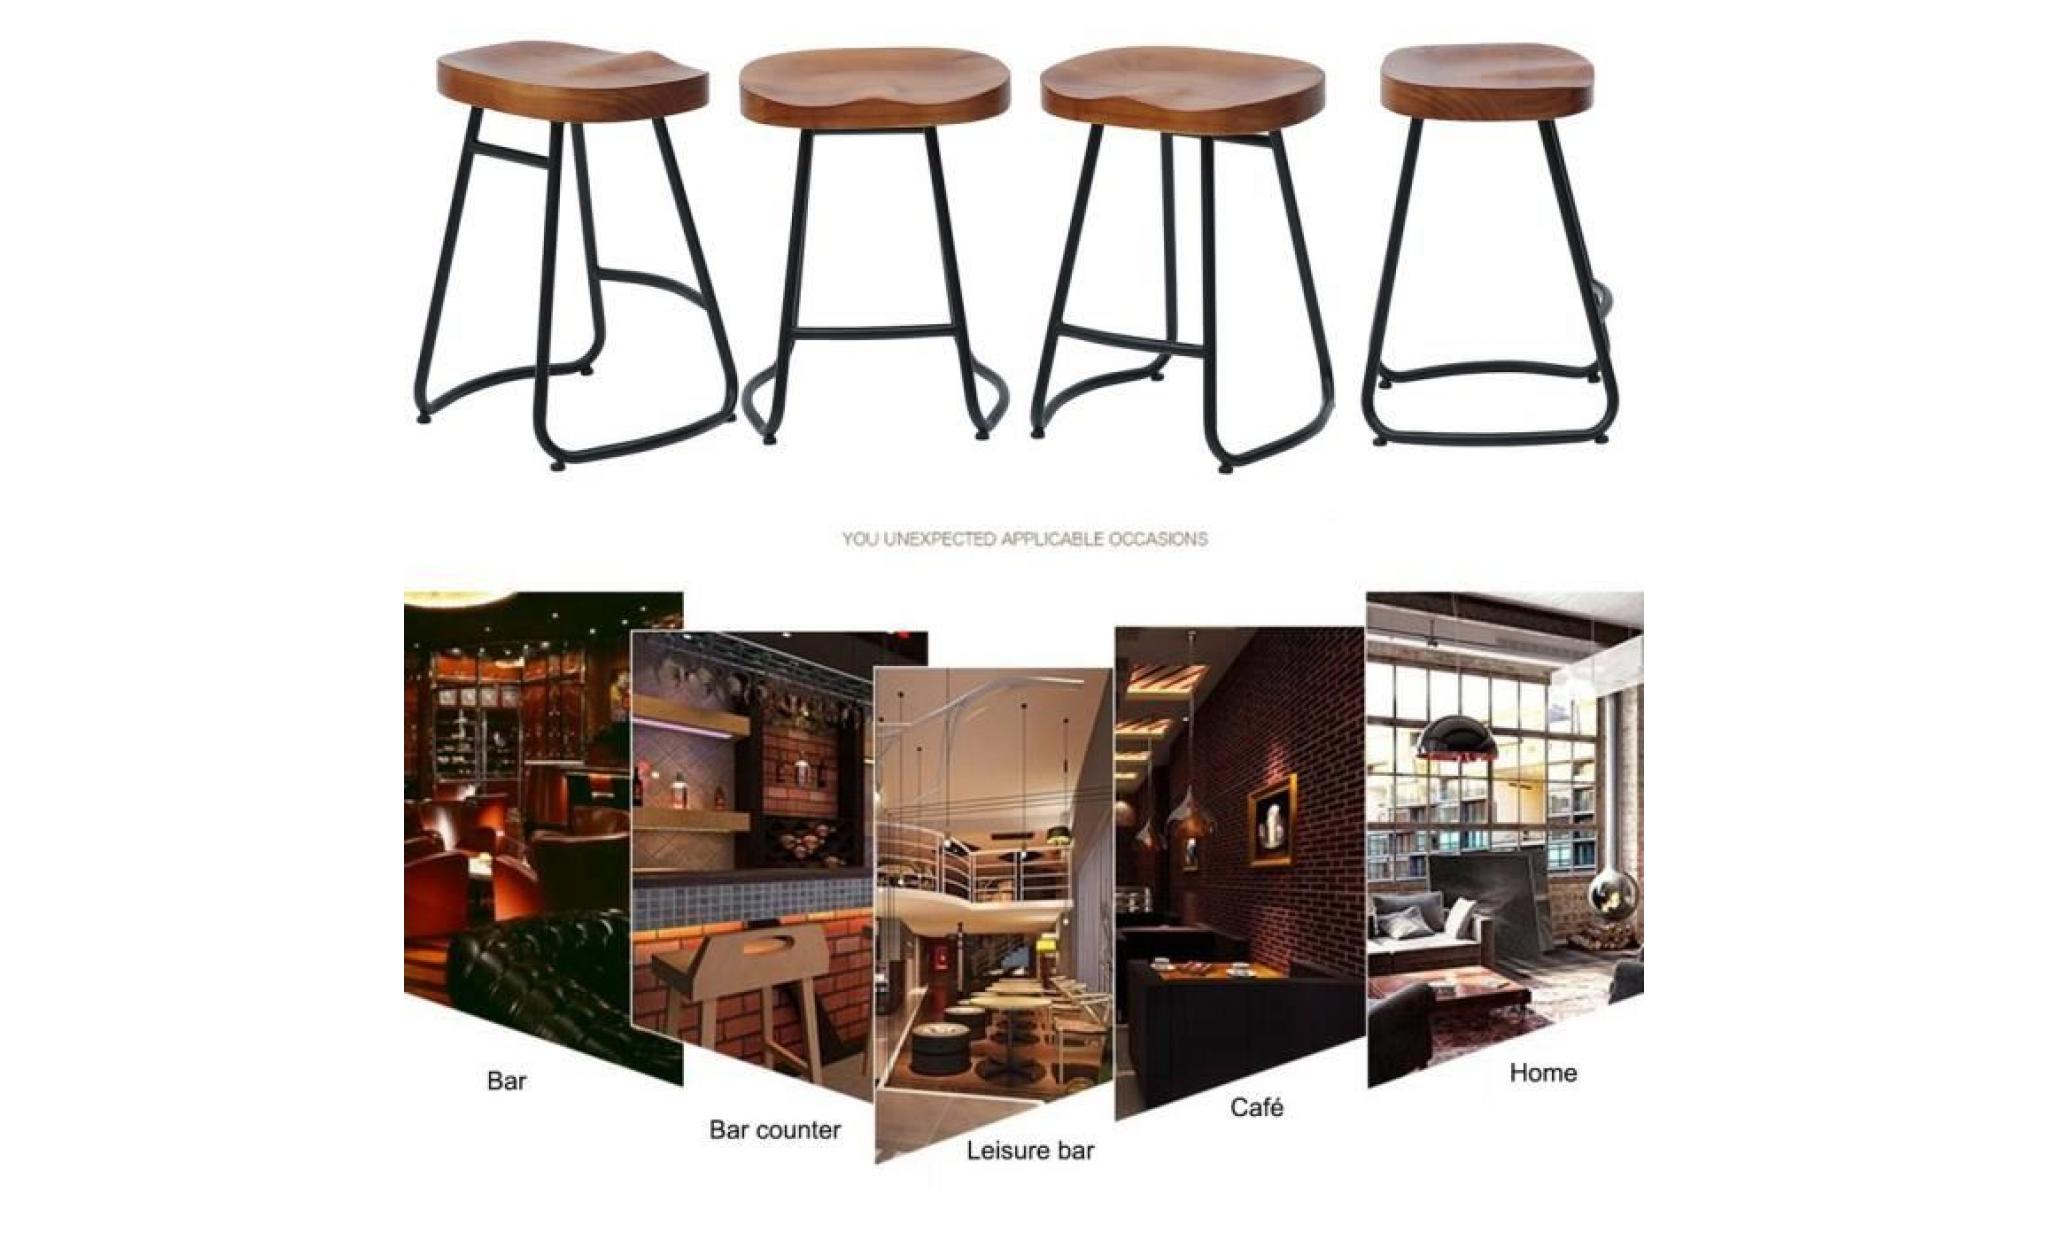 leshp® 1pc tabouret de bar en bois style vintage rustique industriel capacité charge 100kg chaise à manger 35*31*55cm pas cher